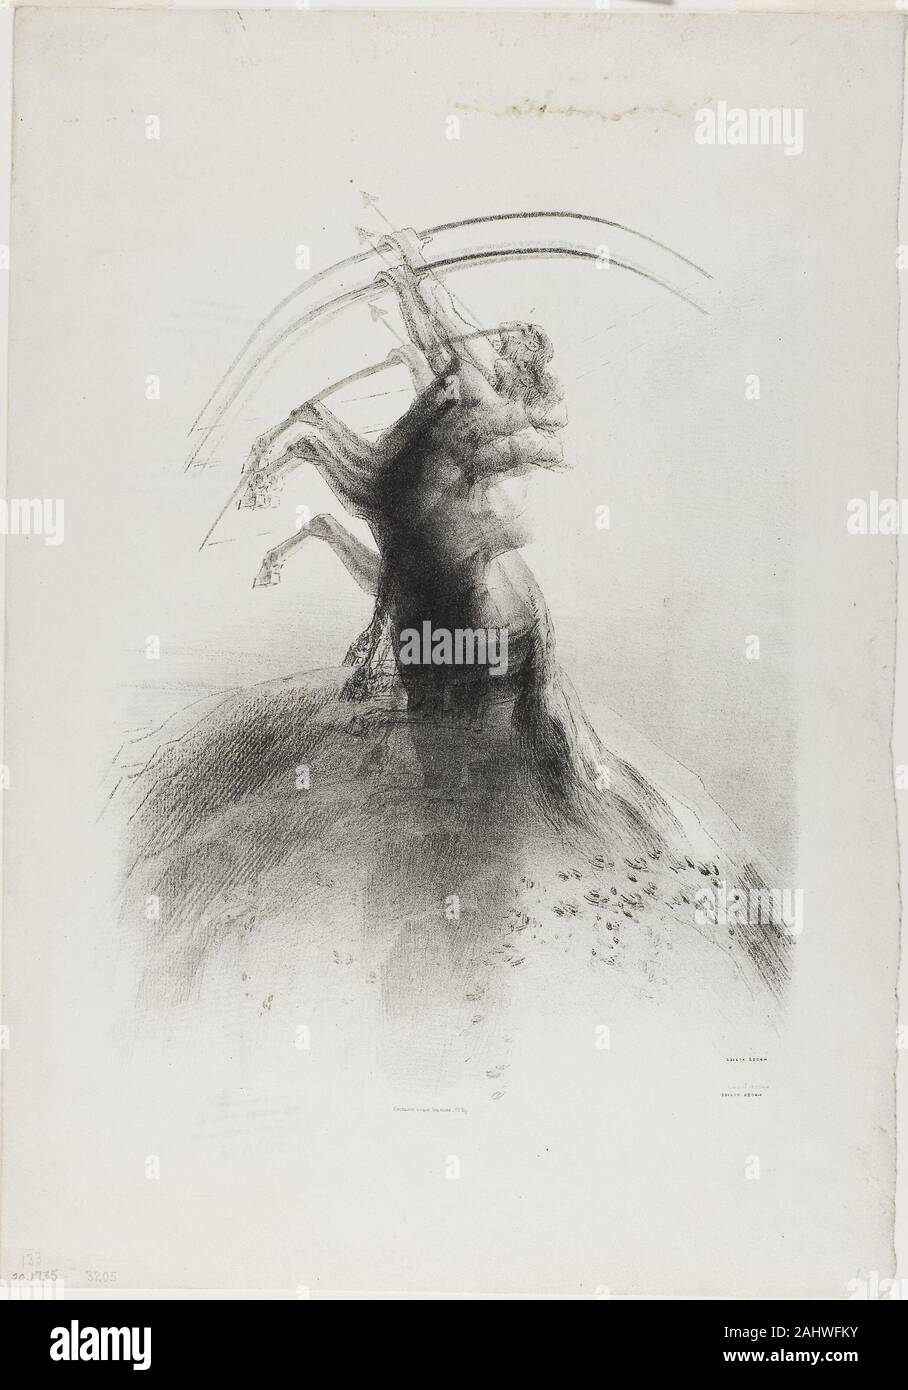 Odilon Redon. À centaure les nuages. 1895. La France. Lithographie en noir sur papier vélin gris clair Banque D'Images